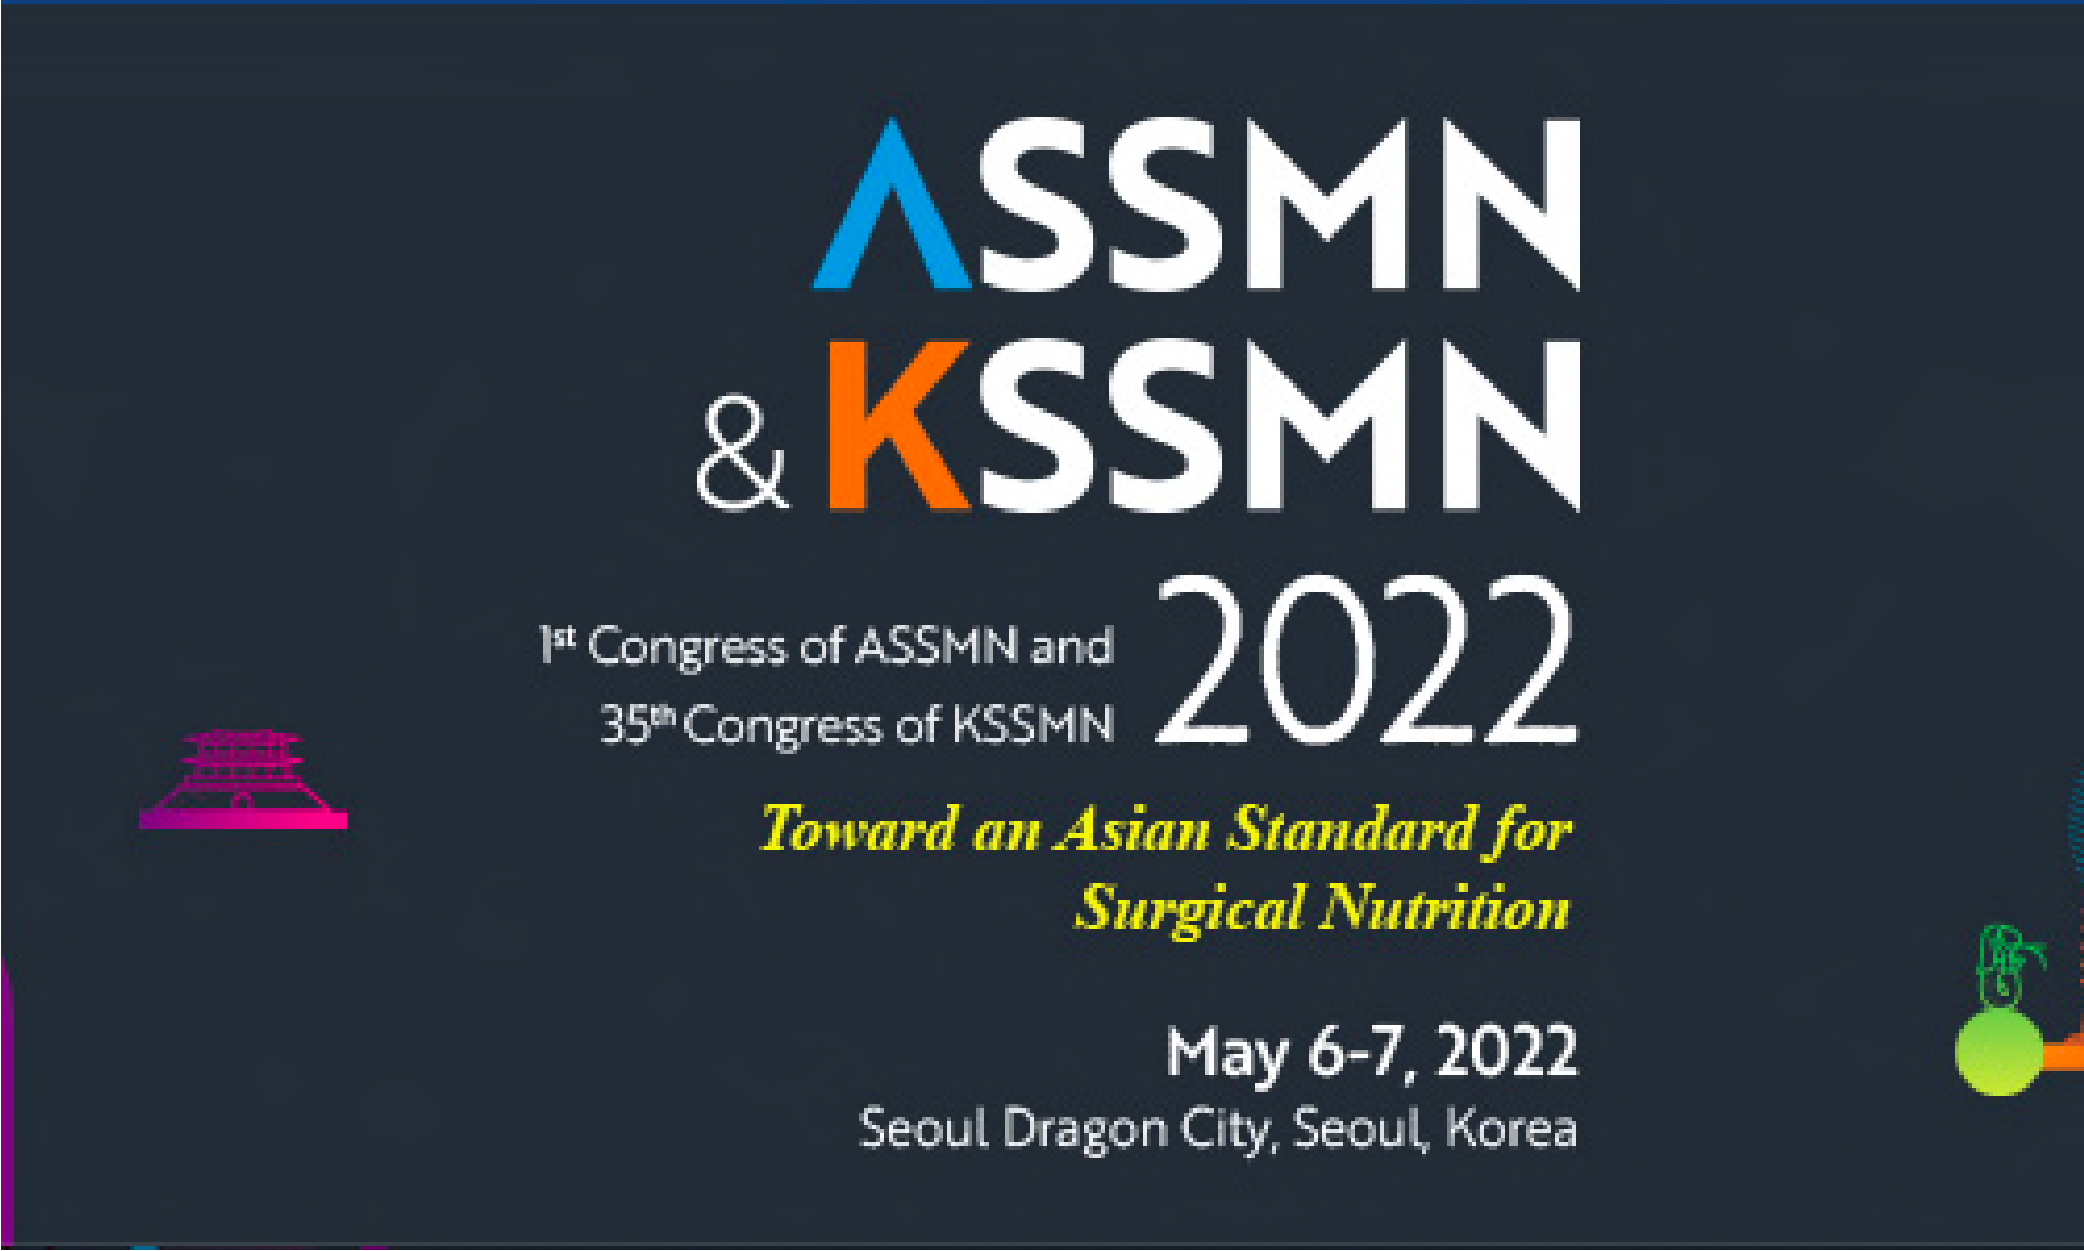 ASSMN & KSSMN 2022